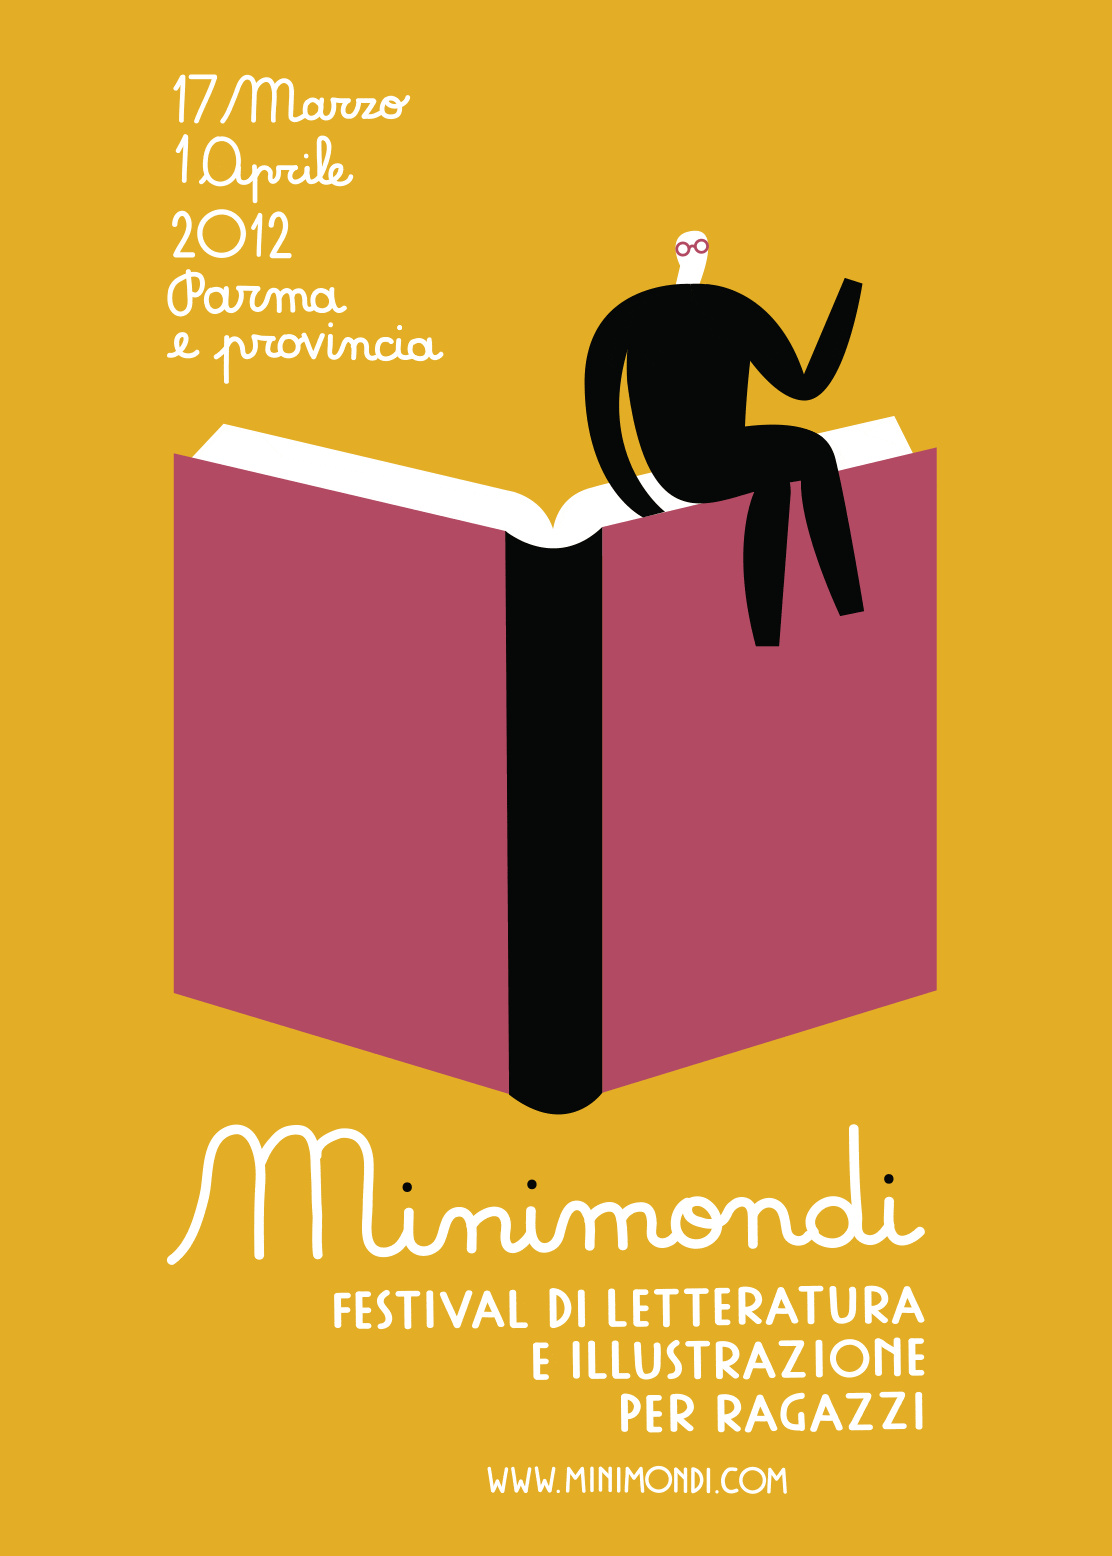 festival-minimondi-illustrazione-per-ragazzi-olimpia-zagnoli